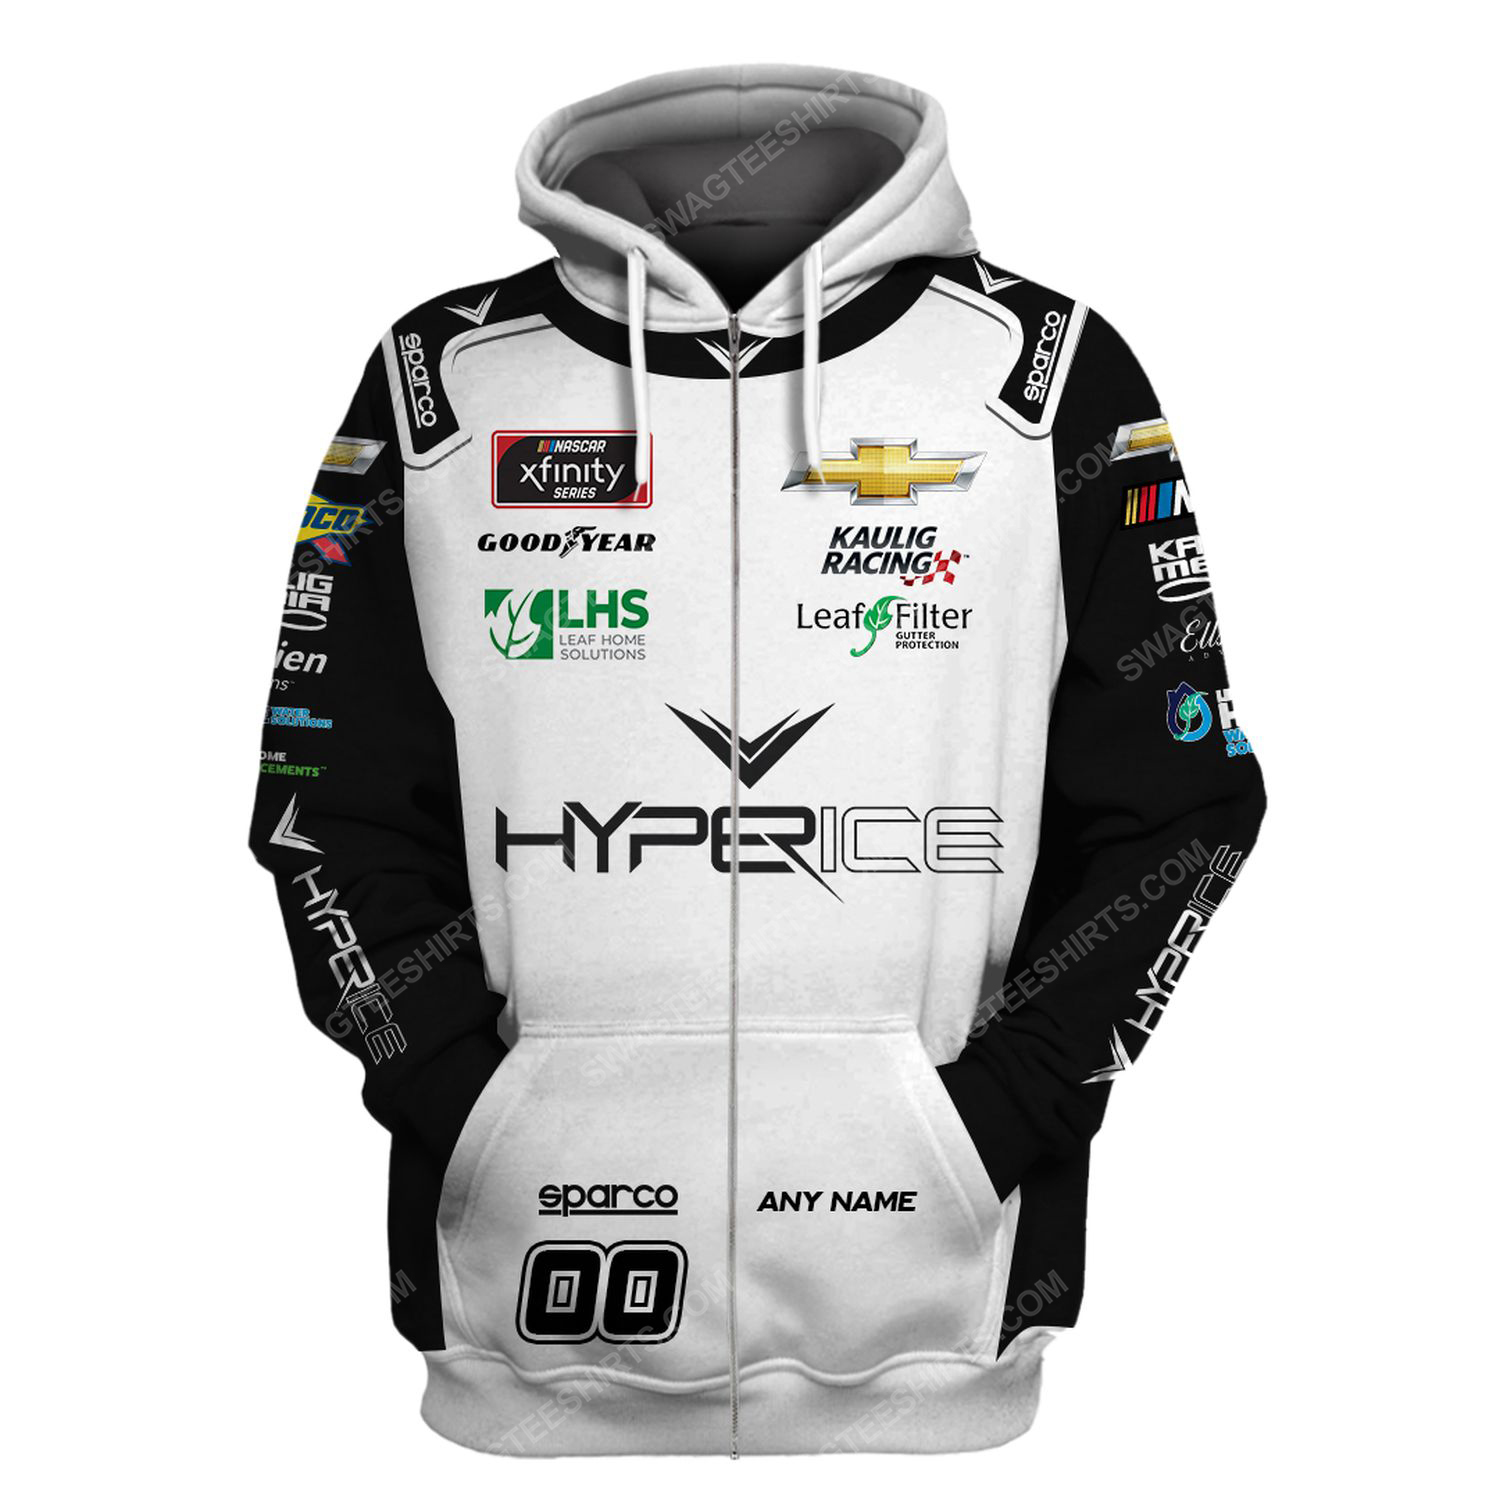 Custom hyperice racing team motorsport full printing zip hoodie